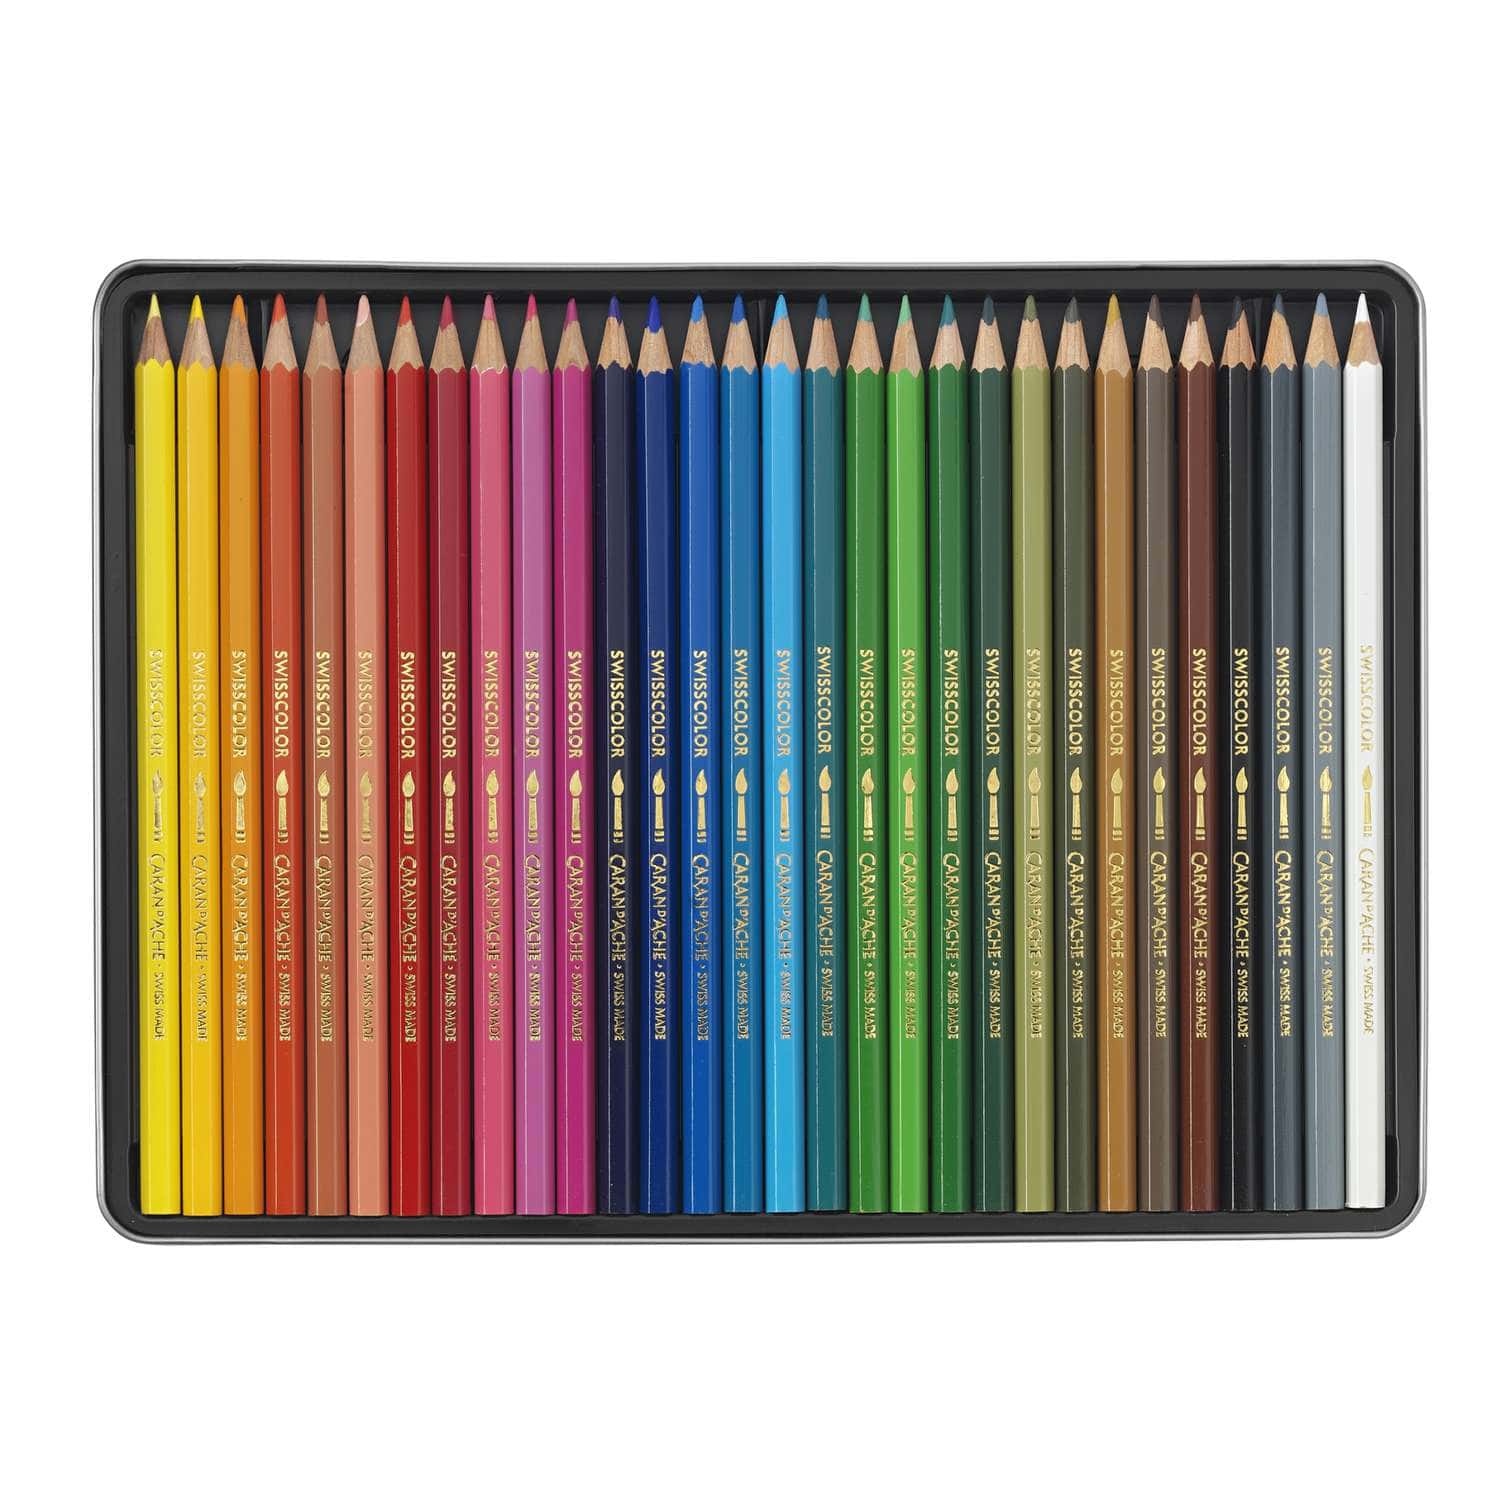 Crayons de couleurs aquarellables Caran d'Ache SwissColor